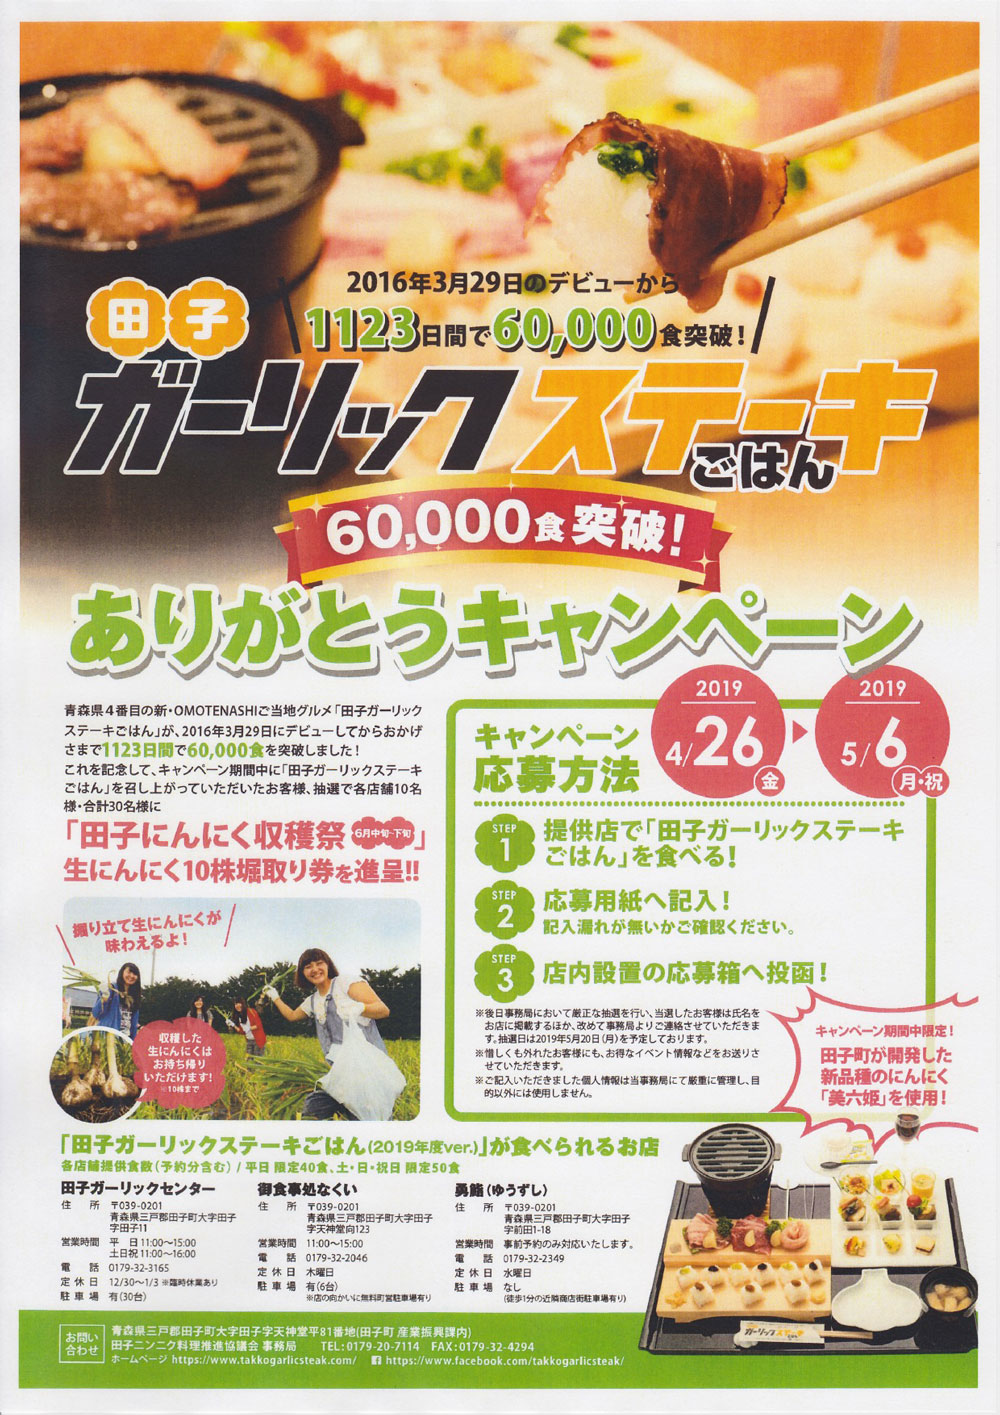 田子 ガーリックステーキごはん6万食突破 ありがとうキャンペーン